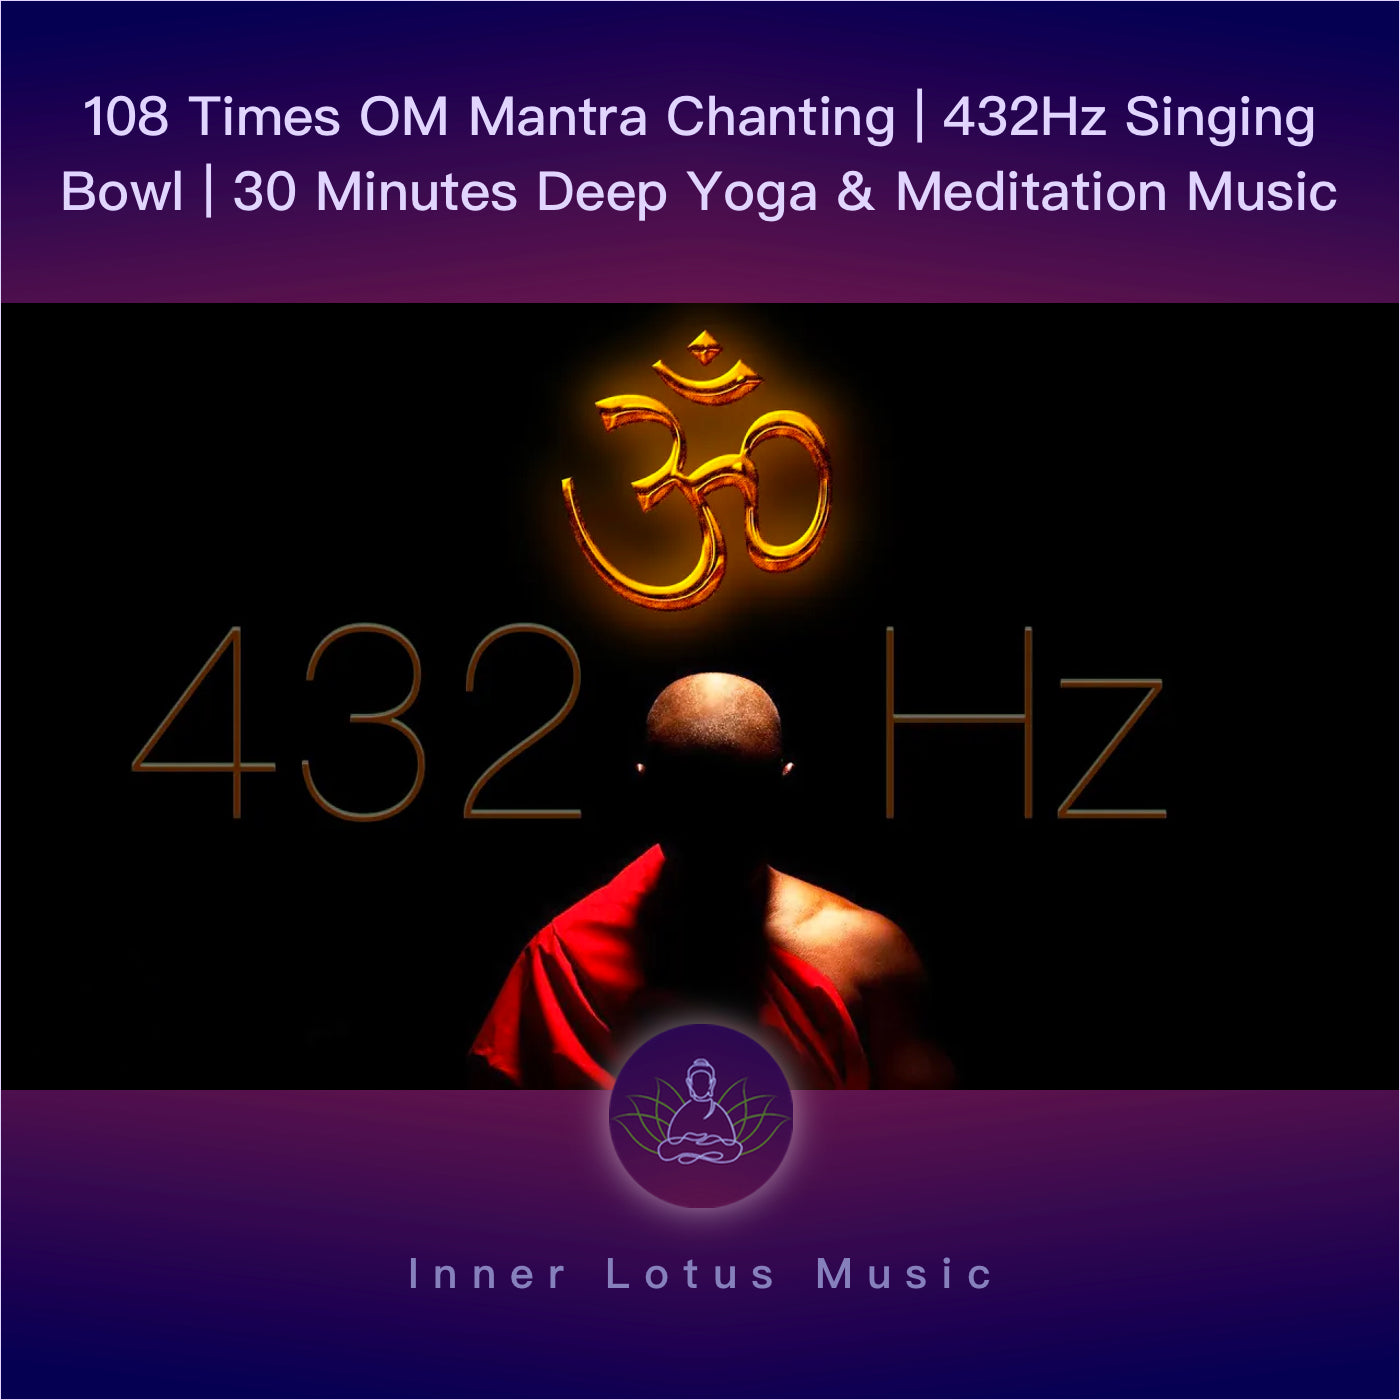 Mantra OM cantado 108 veces | Música 432Hz y Cuenco de Cristal | 30 Minutos Yoga y Meditación